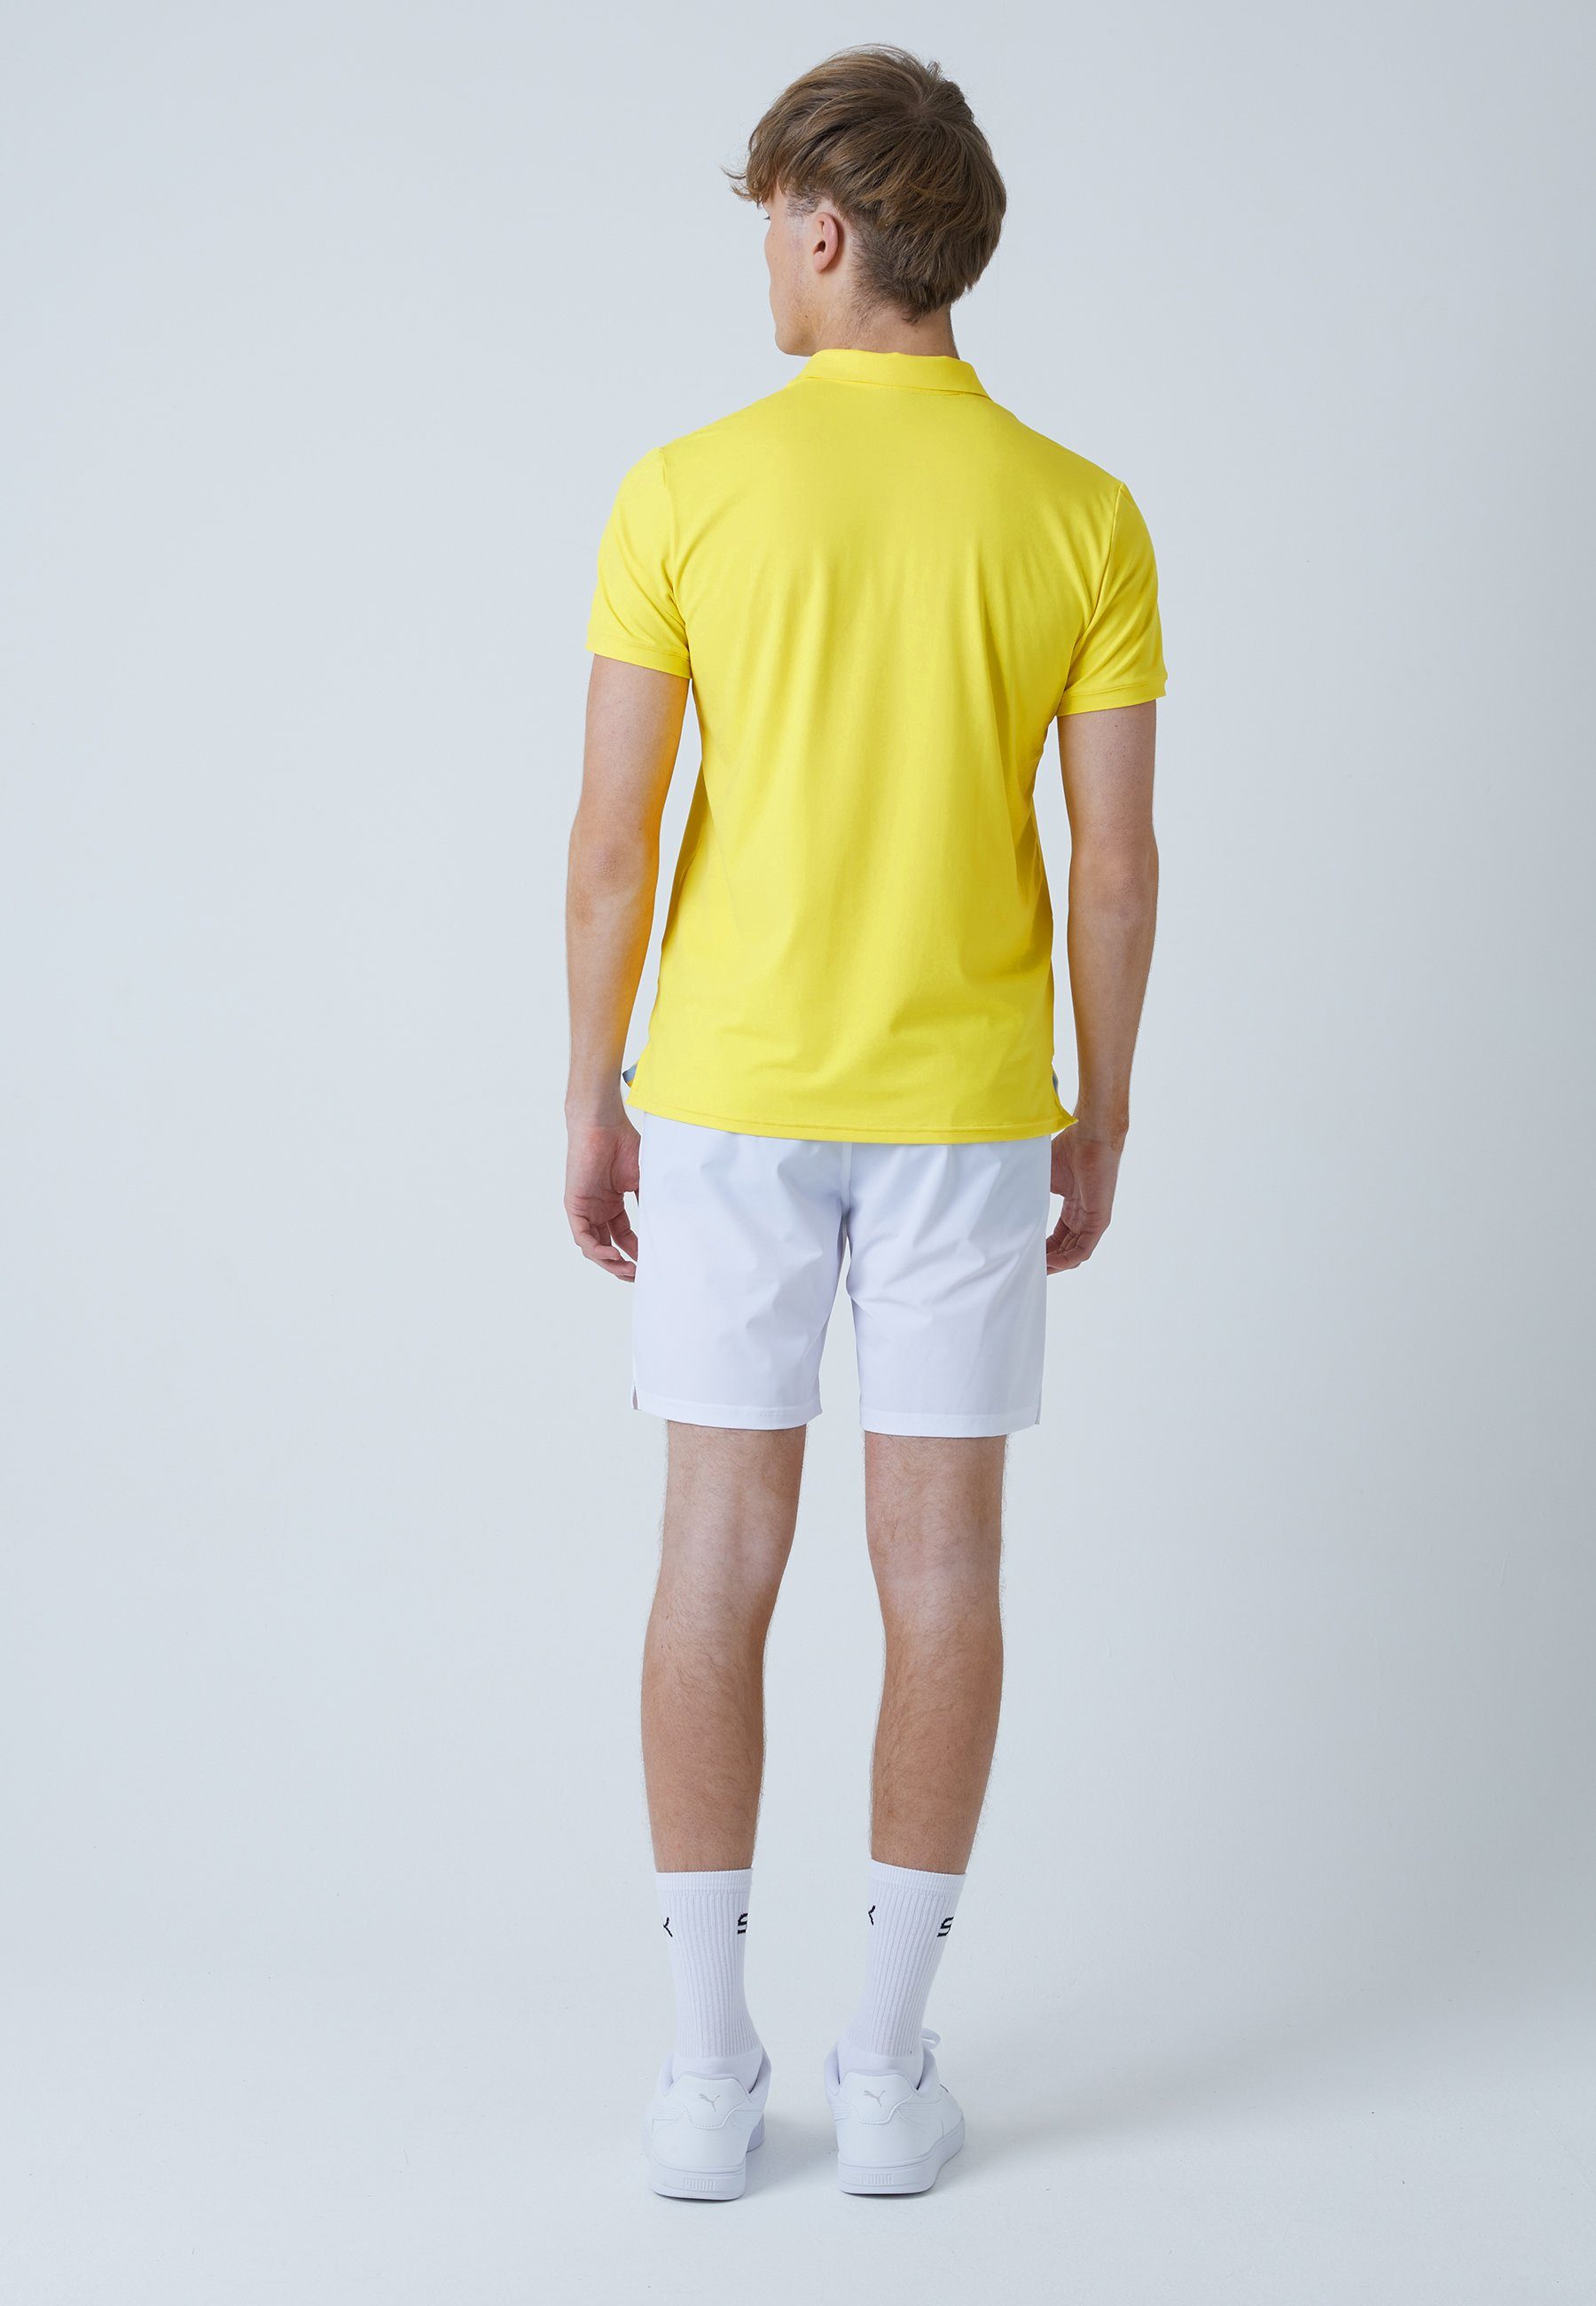 SPORTKIND Funktionsshirt Golf Kurzarm gelb Polo Herren & Jungen Shirt